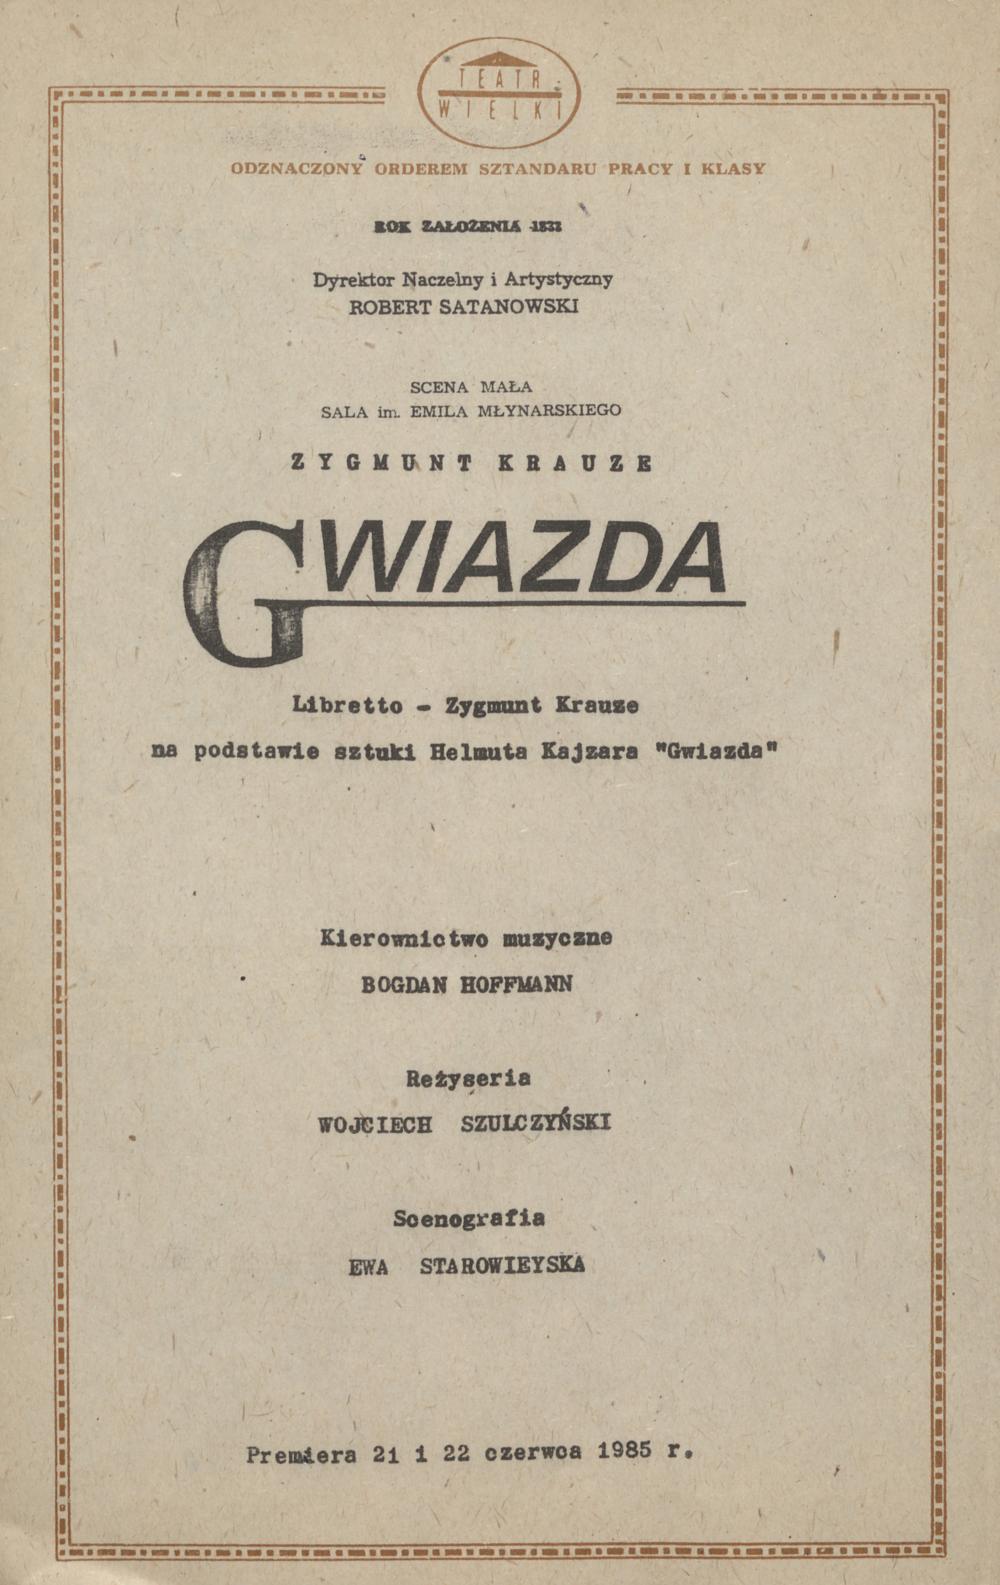 Wkładka Obsadowa "Gwiazda" Zygmunt Krauze 21.06.1985